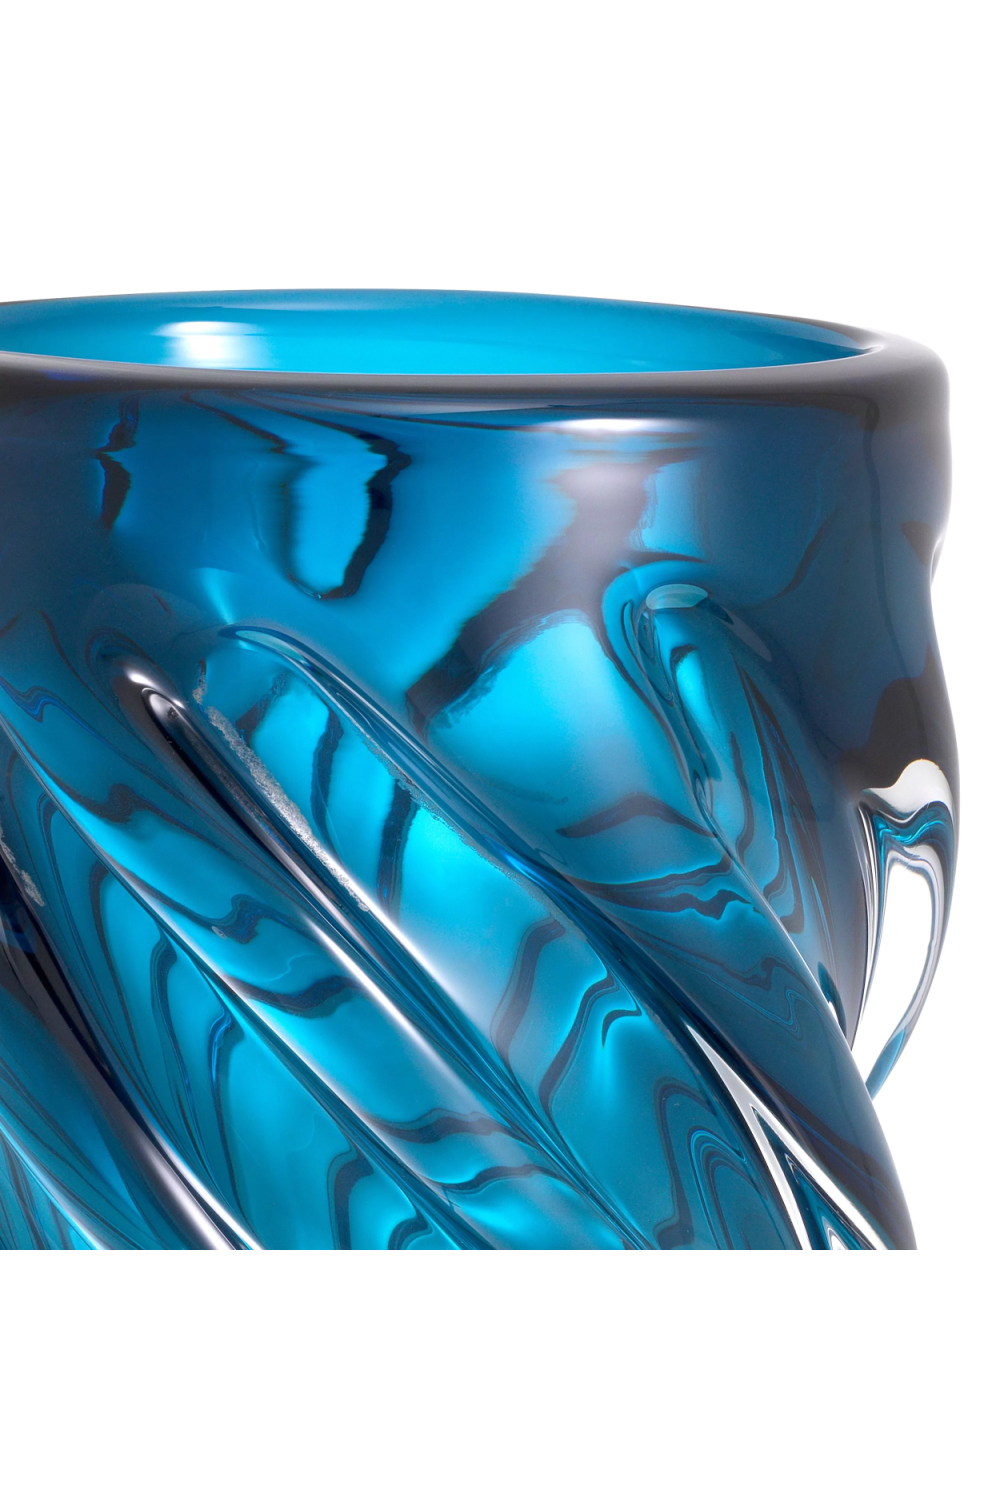 Blue Handblown Glass Vase | Eichholtz Angelito L | OROA.com